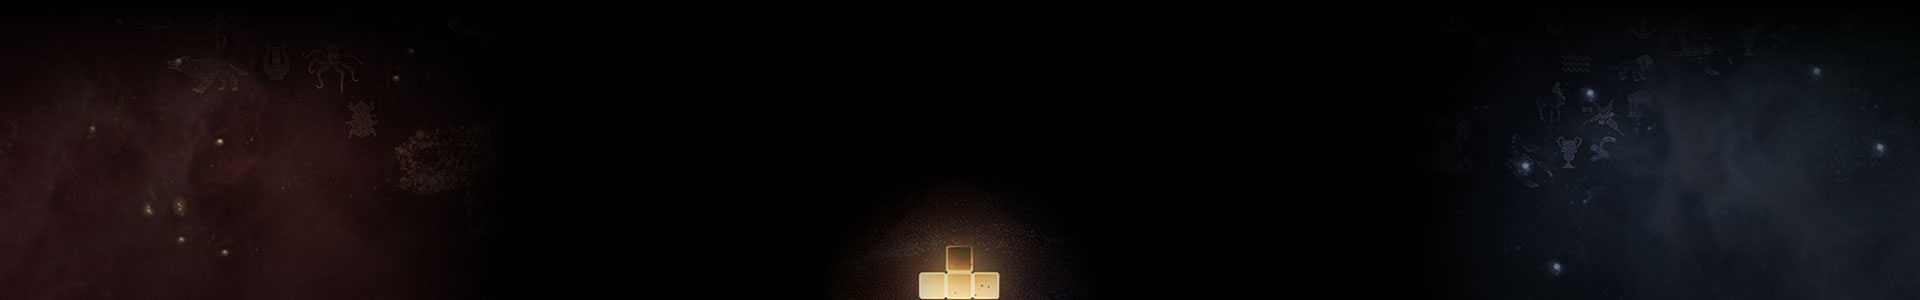 Een gloeiend Tetris-steentje staat tussen de sterren.